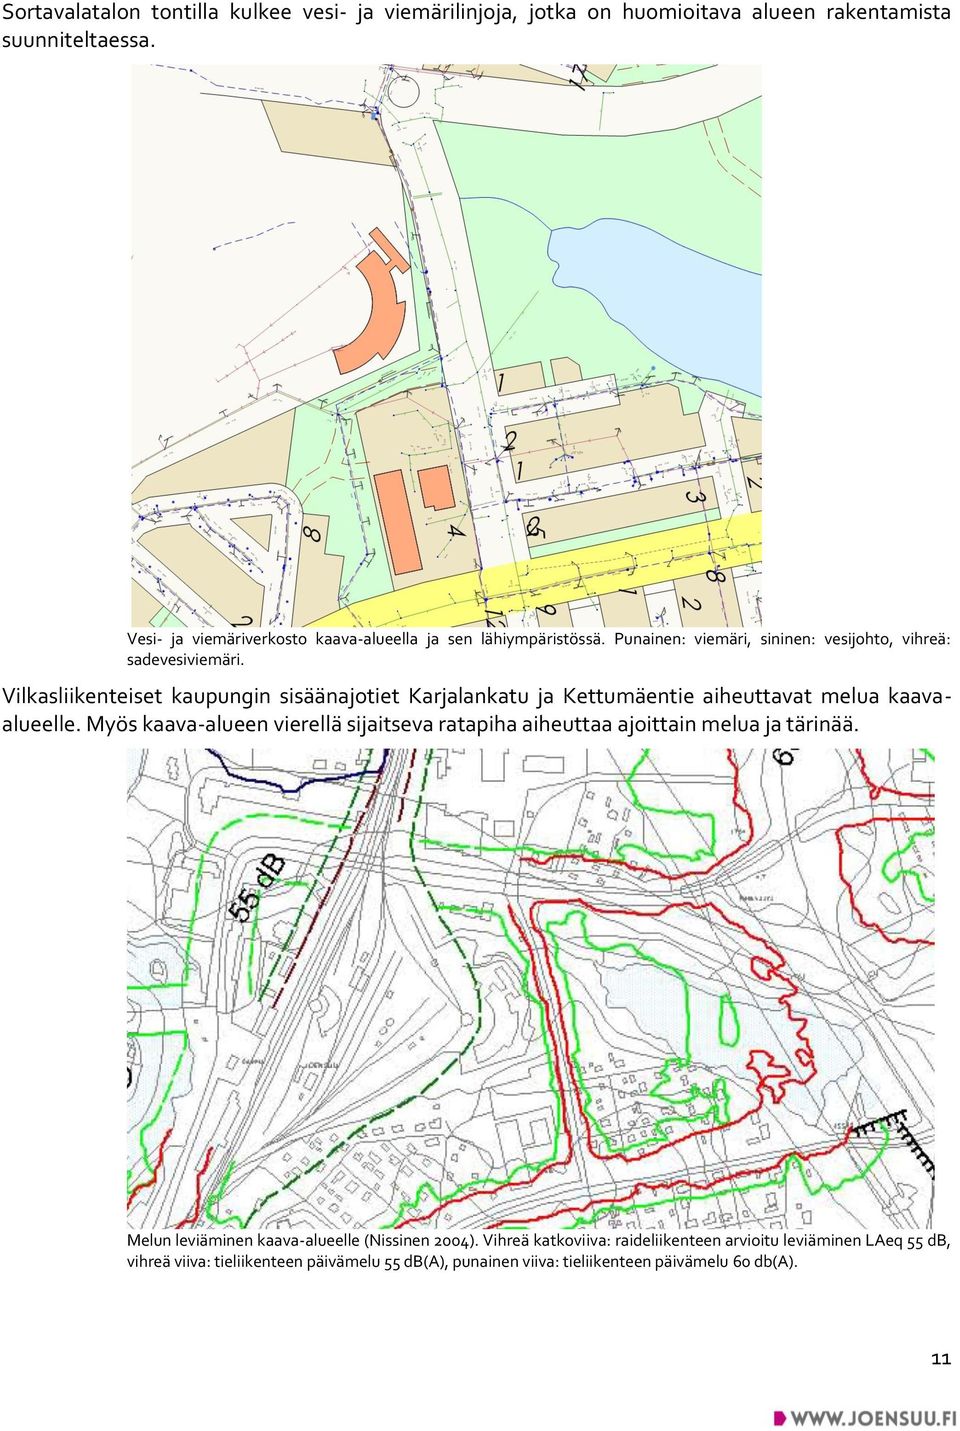 Vilkasliikenteiset kaupungin sisäänajotiet Karjalankatu ja Kettumäentie aiheuttavat melua kaavaalueelle.